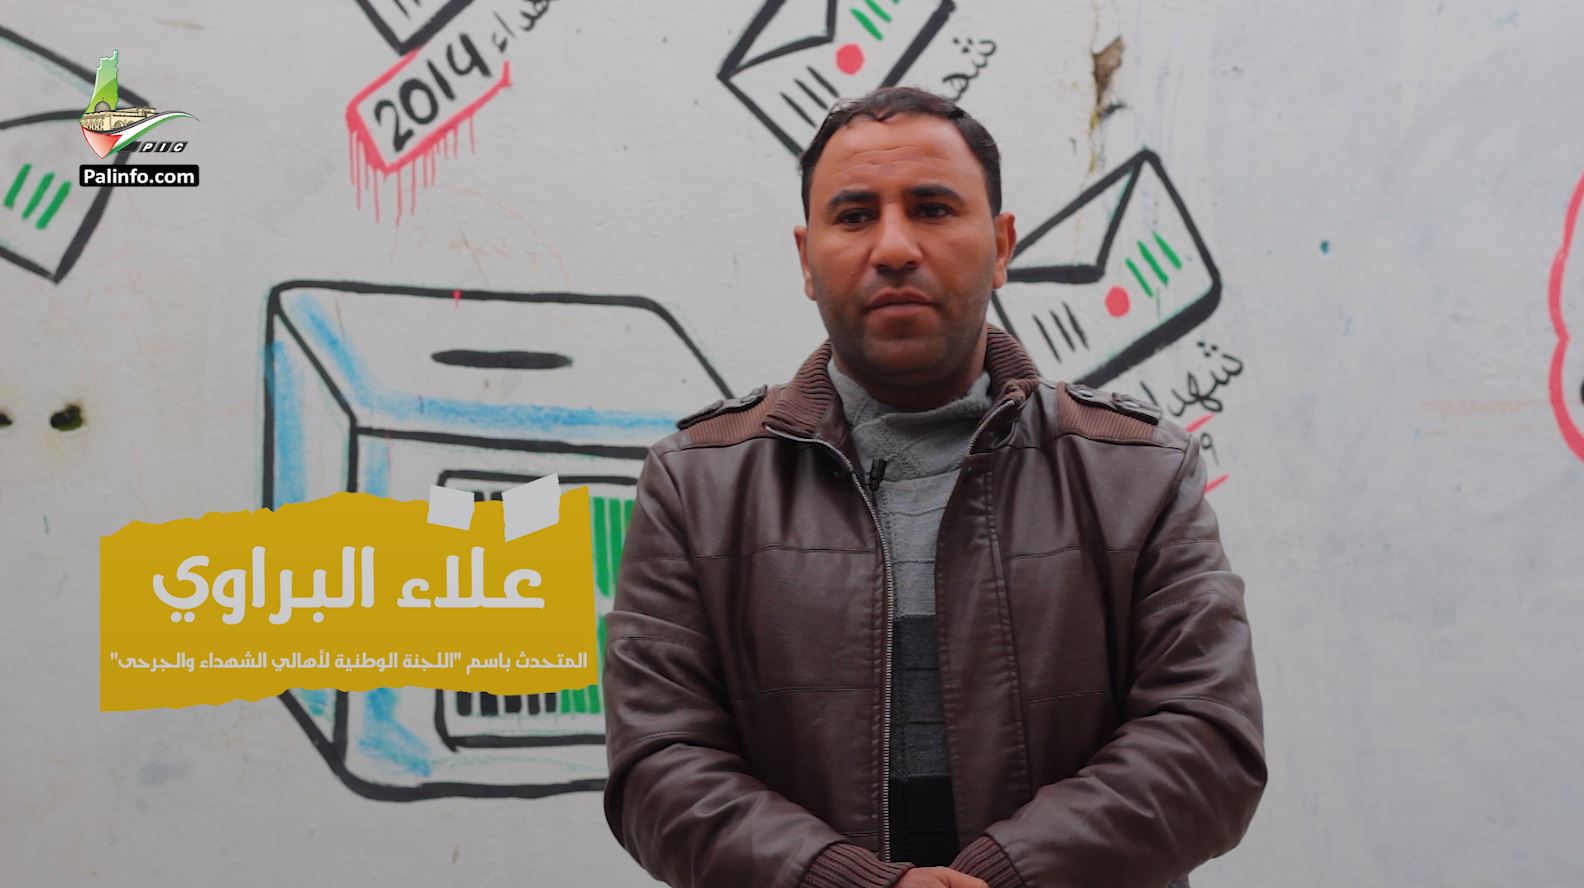 علاء البراوي: عقوبات السلطة على أهالي شهداء غزة لم تتوقف